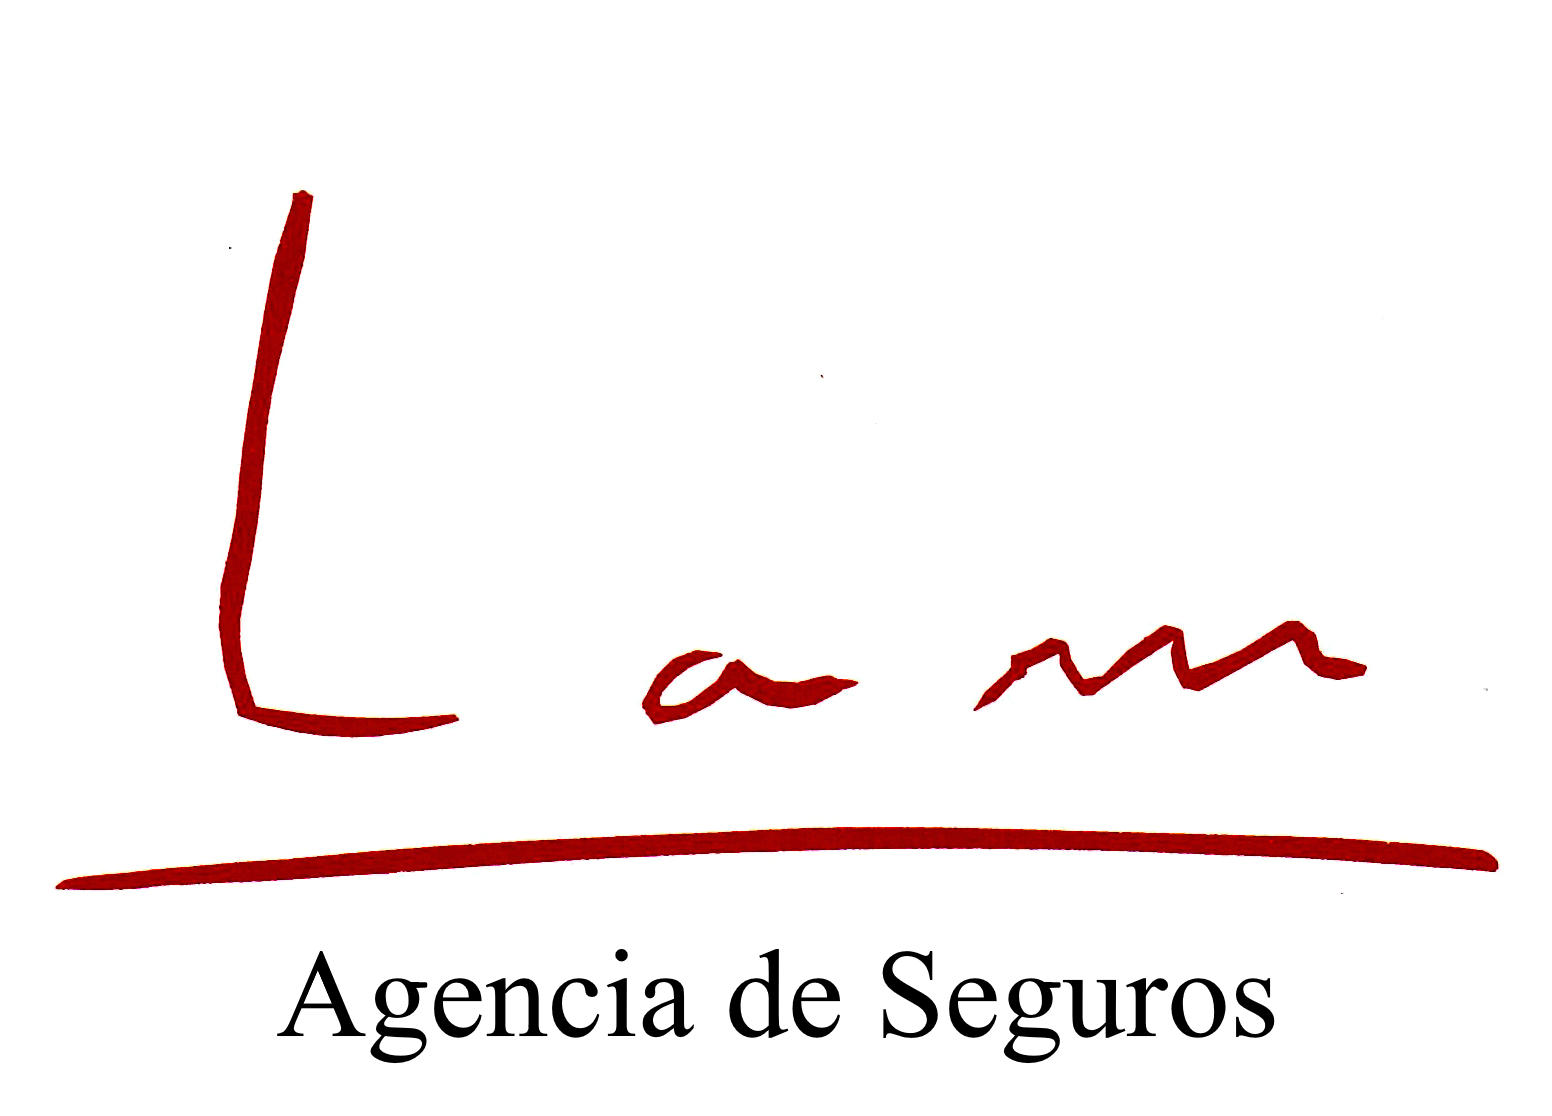 Lam, Agencia de Seguros.